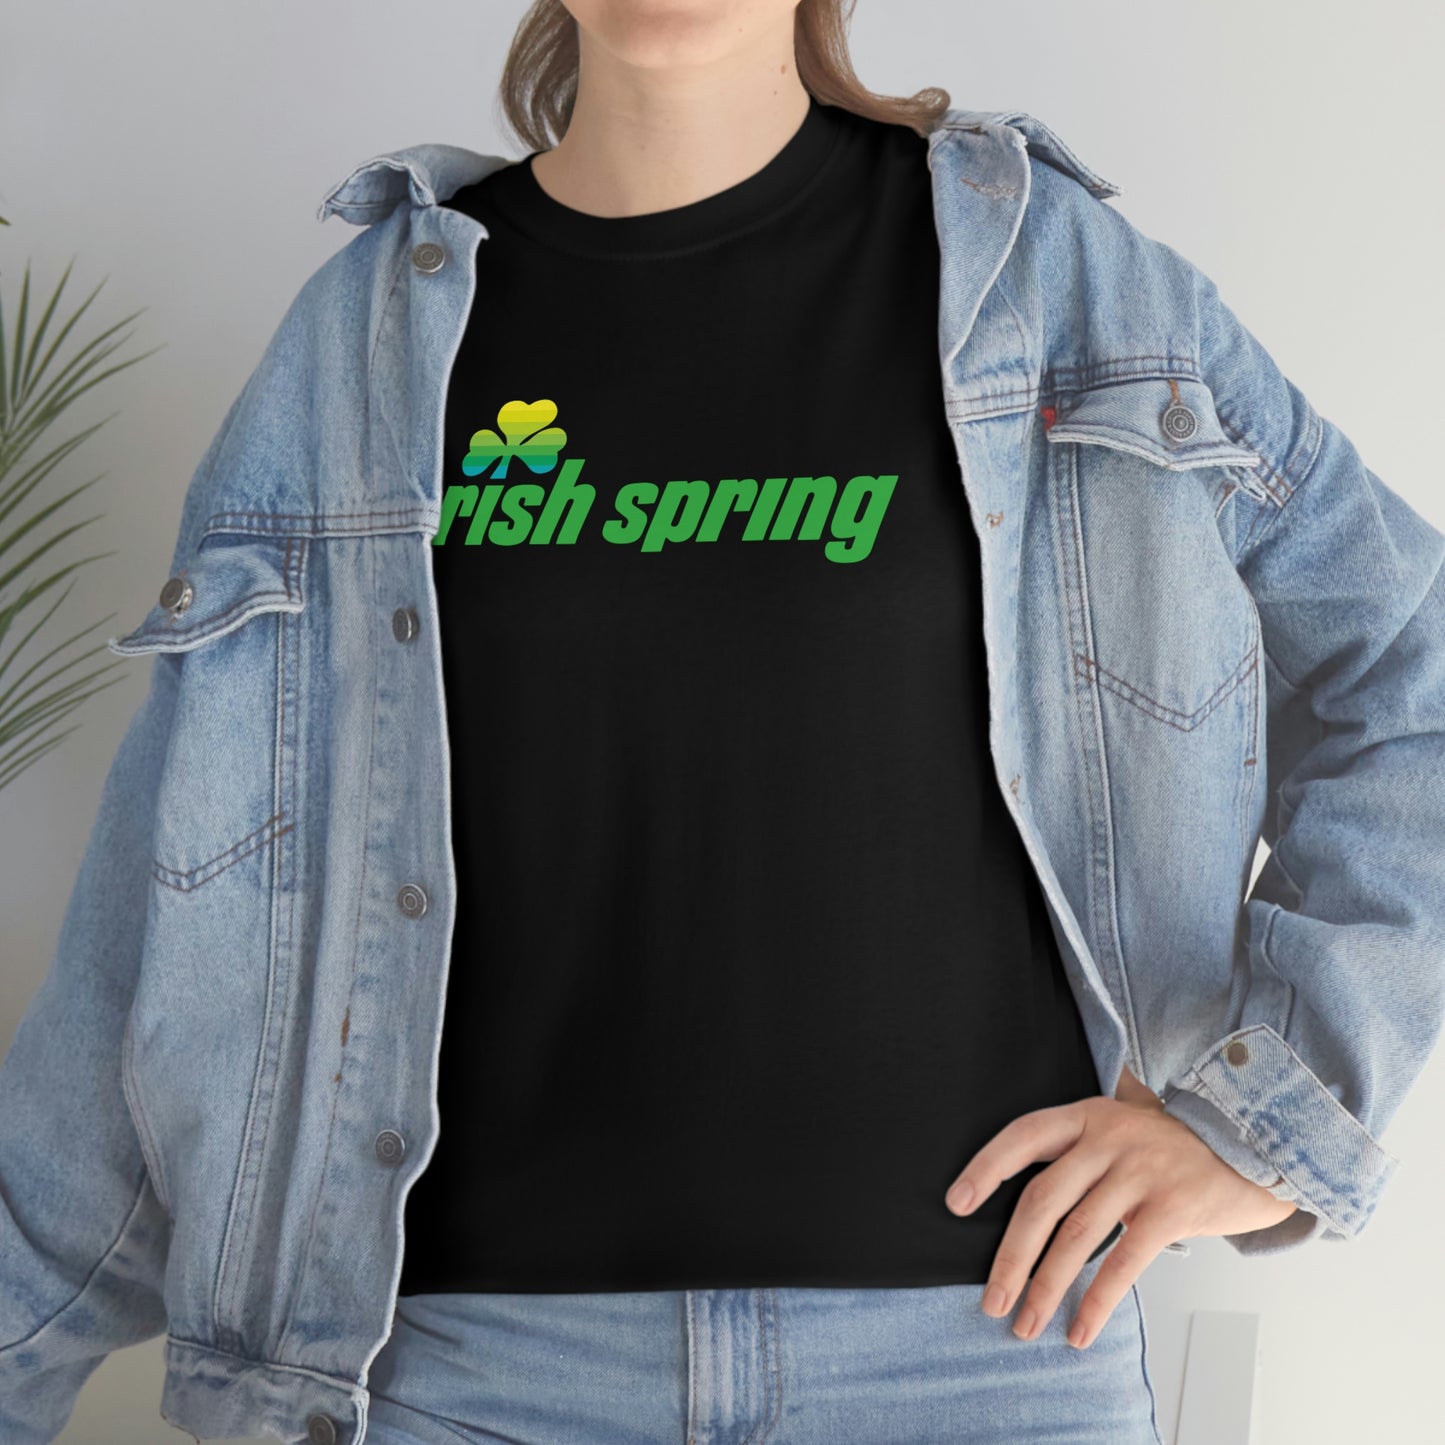 Irish Spring T-Shirt